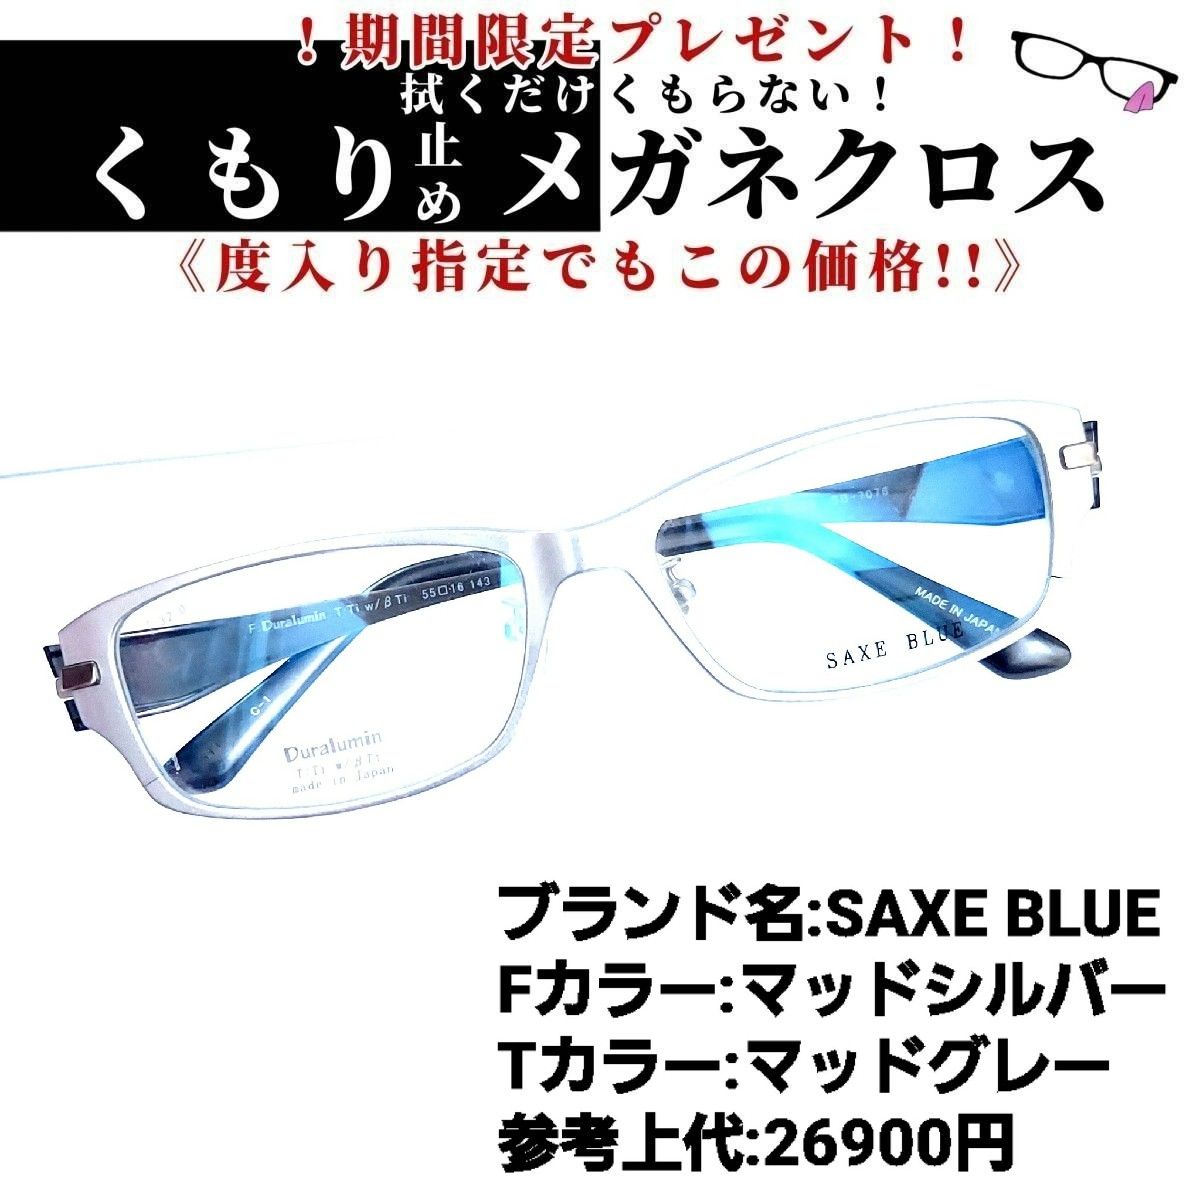 No.1173-メガネ SAXE BLUE【フレームのみ価格】-